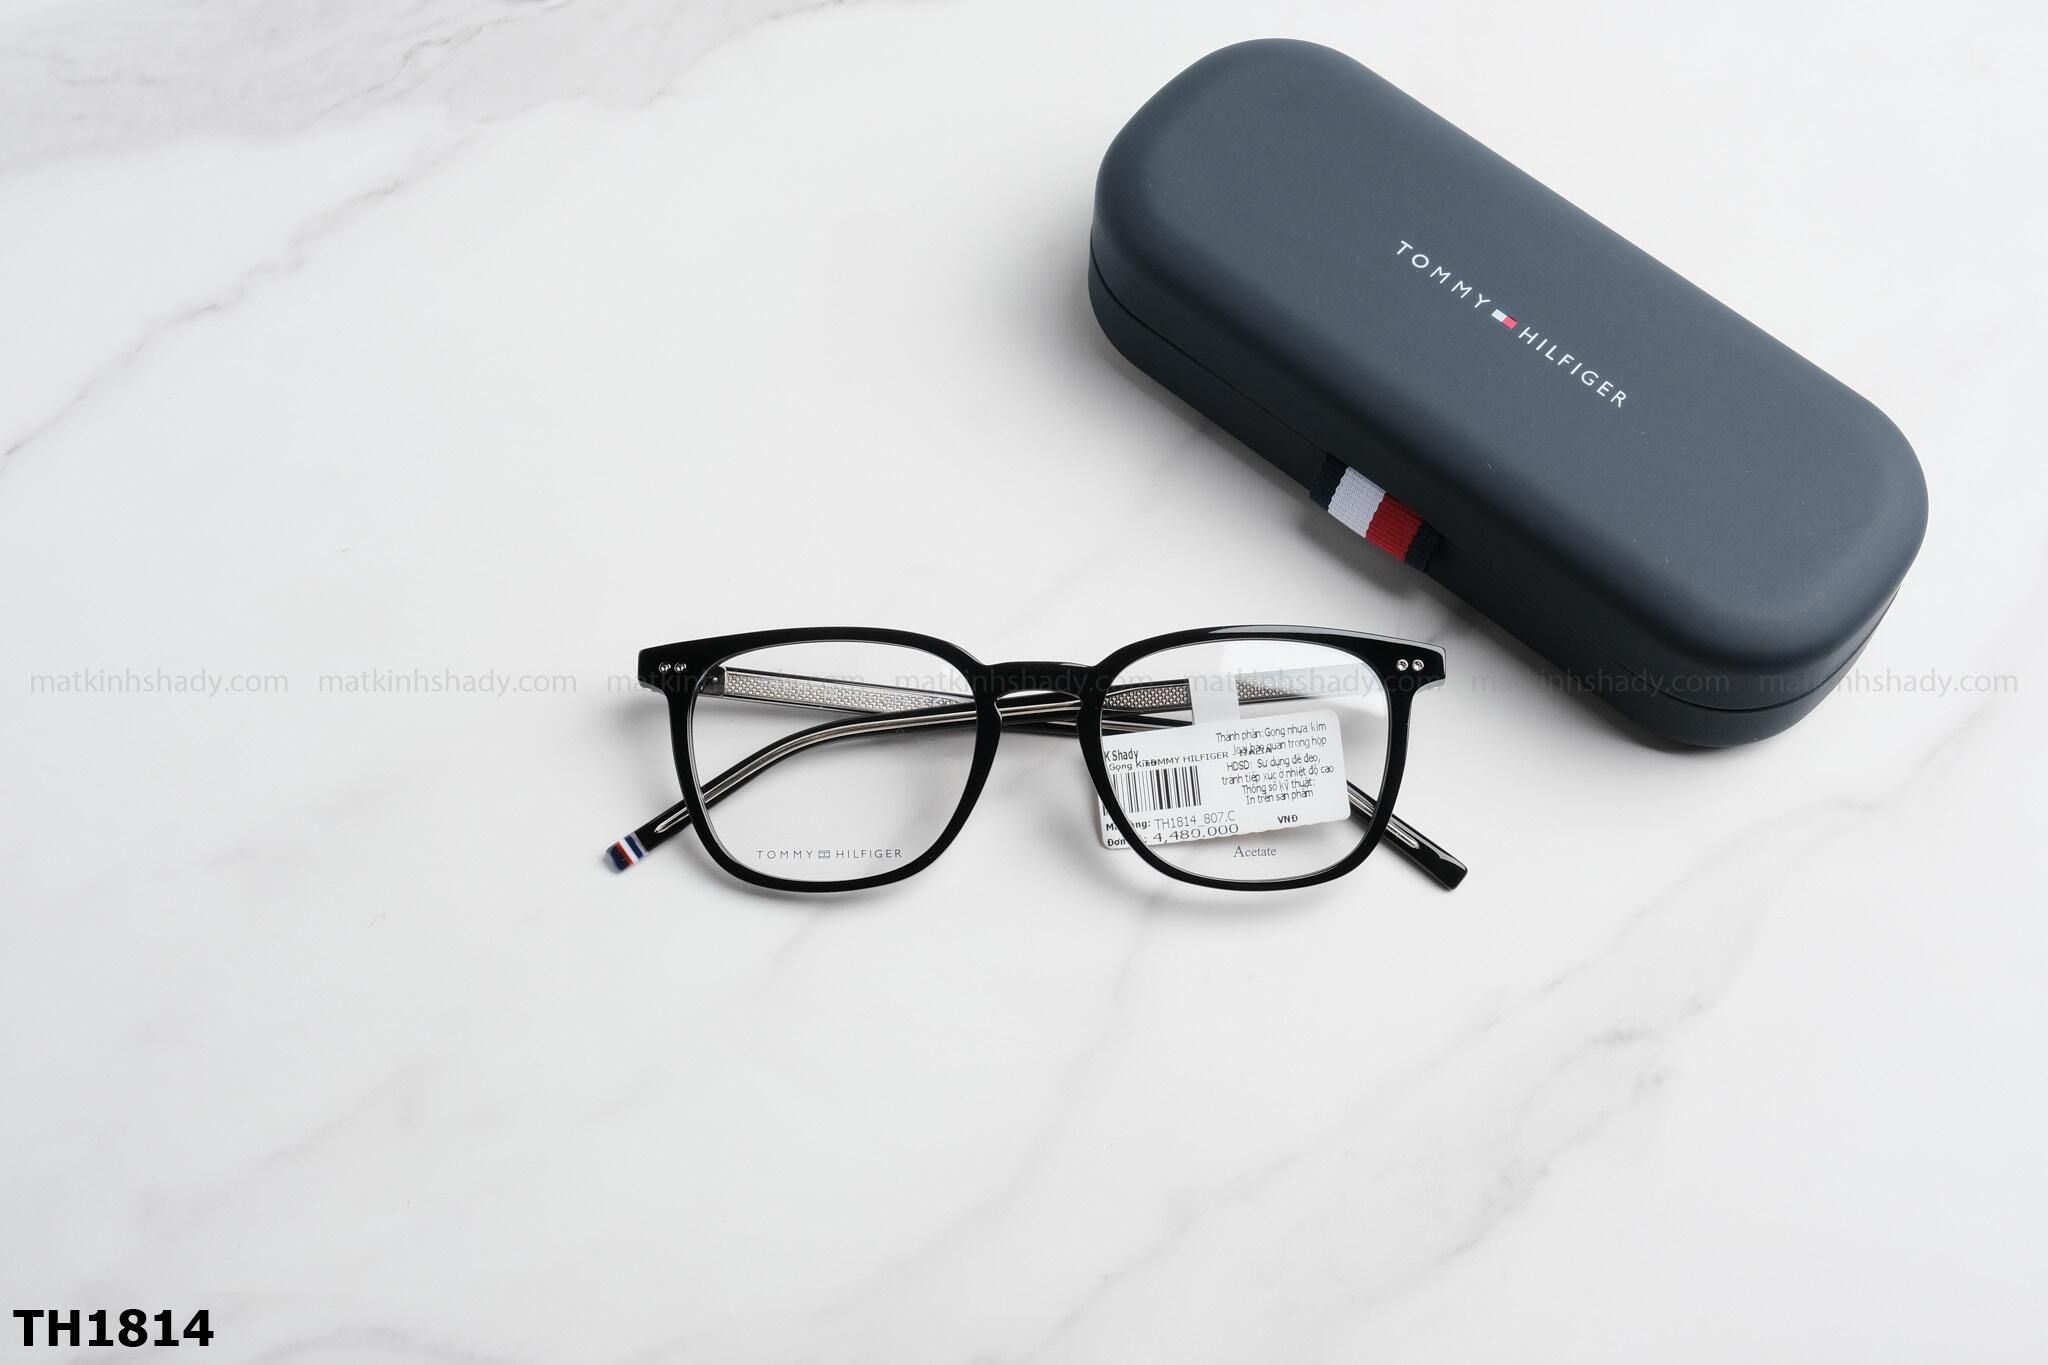  Tommy Hilfiger Eyewear - Glasses - TH1814 